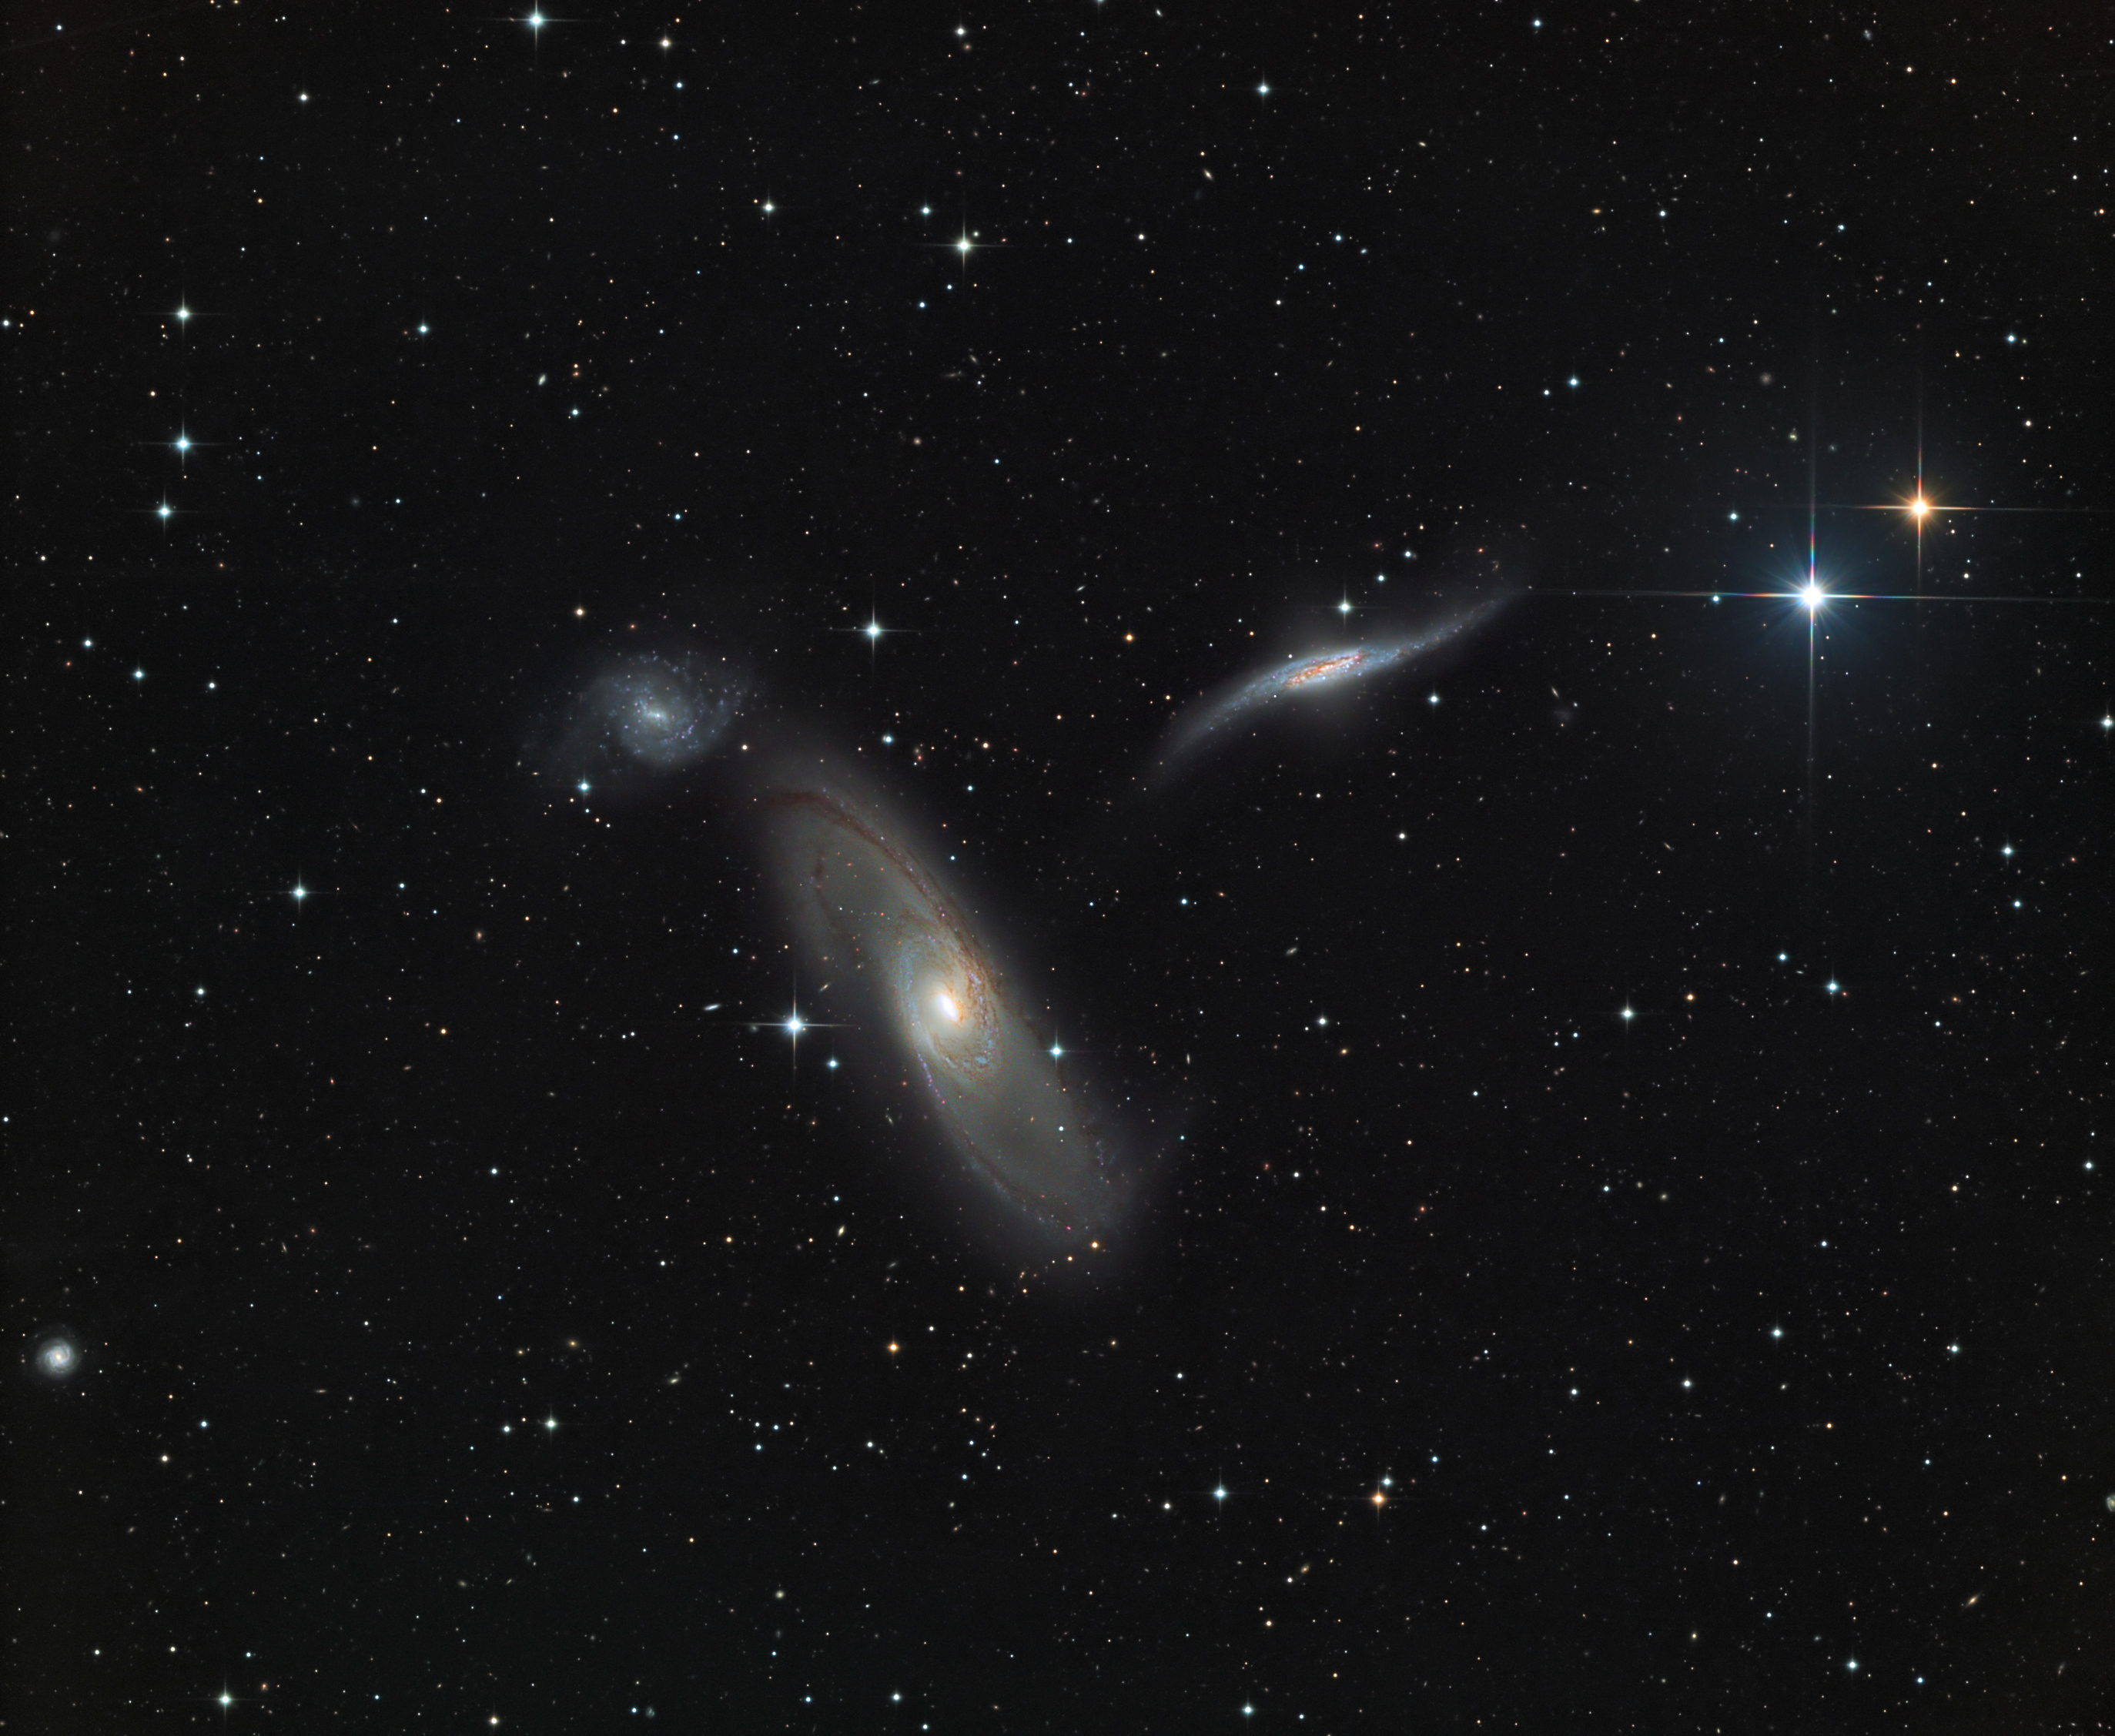 Trio galactique dans la Vierge